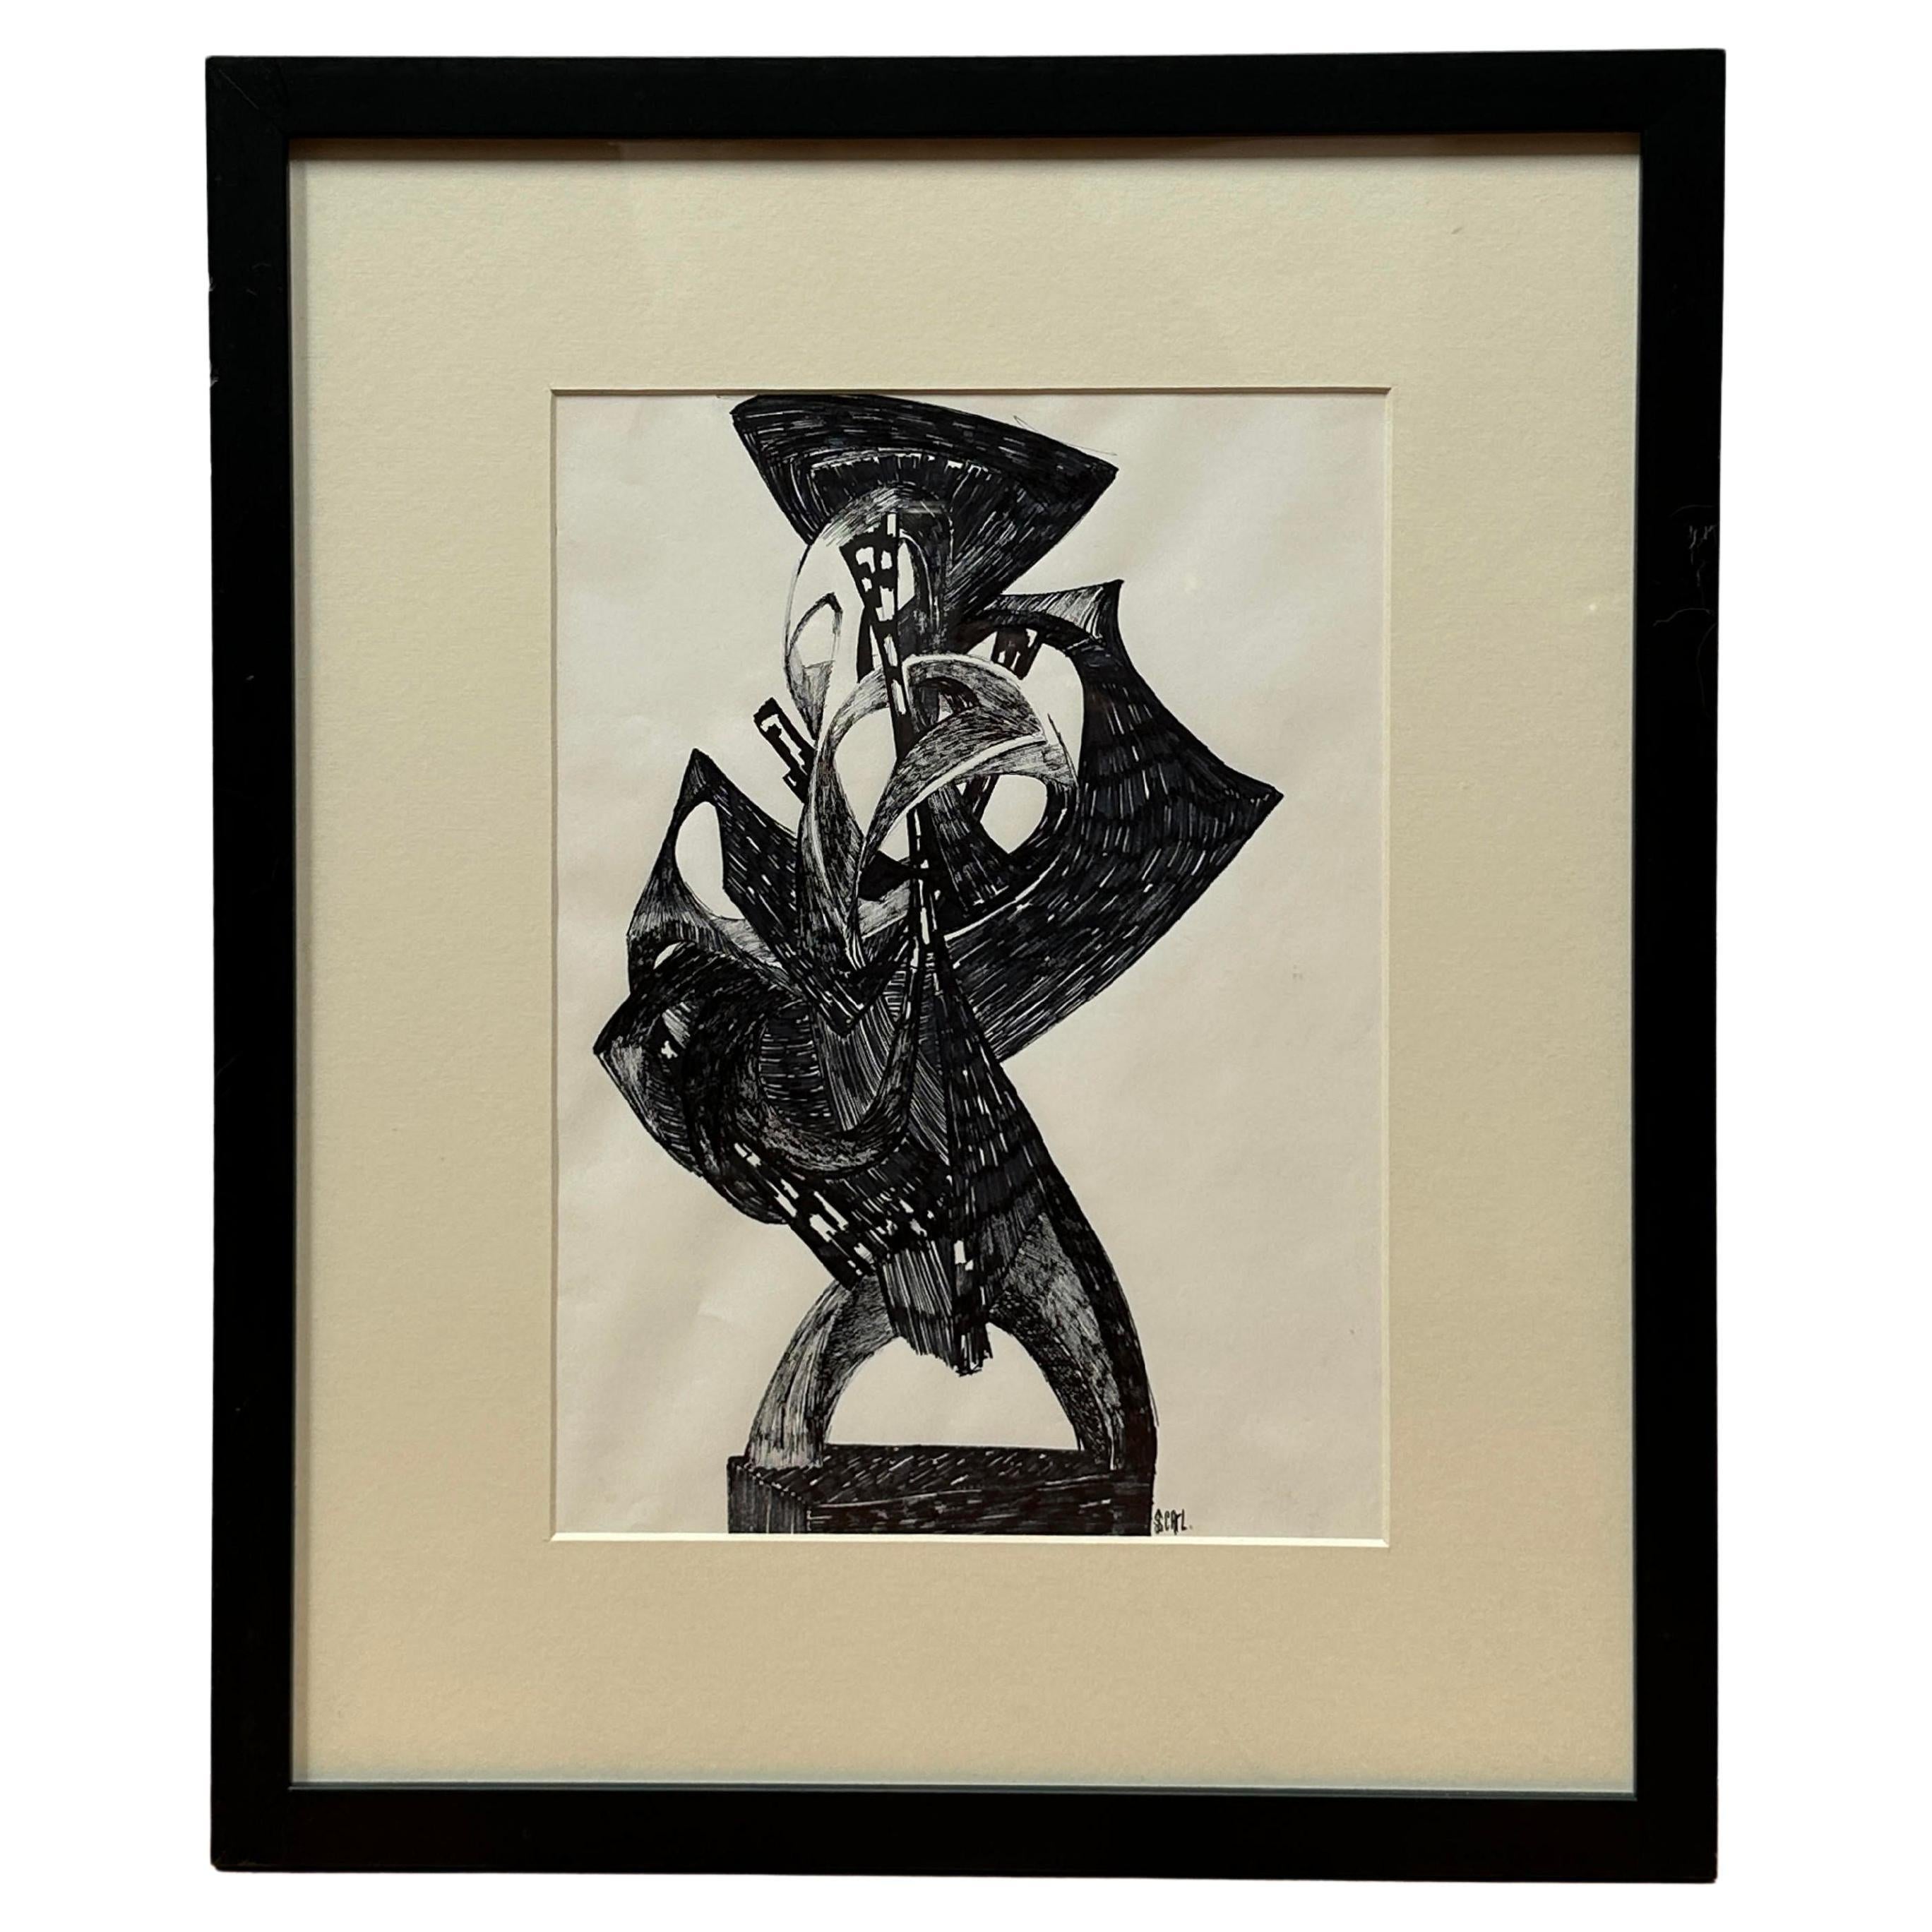 Präsentation einer Zeichnung von Joan Strauss Carl, die als vorbereitende Studie für eine ihrer dreidimensionalen Skulpturen diente. Joan Strauss Carls künstlerische Reise ist eine fortlaufende Erkundung, bei der sich jedes Projekt von der